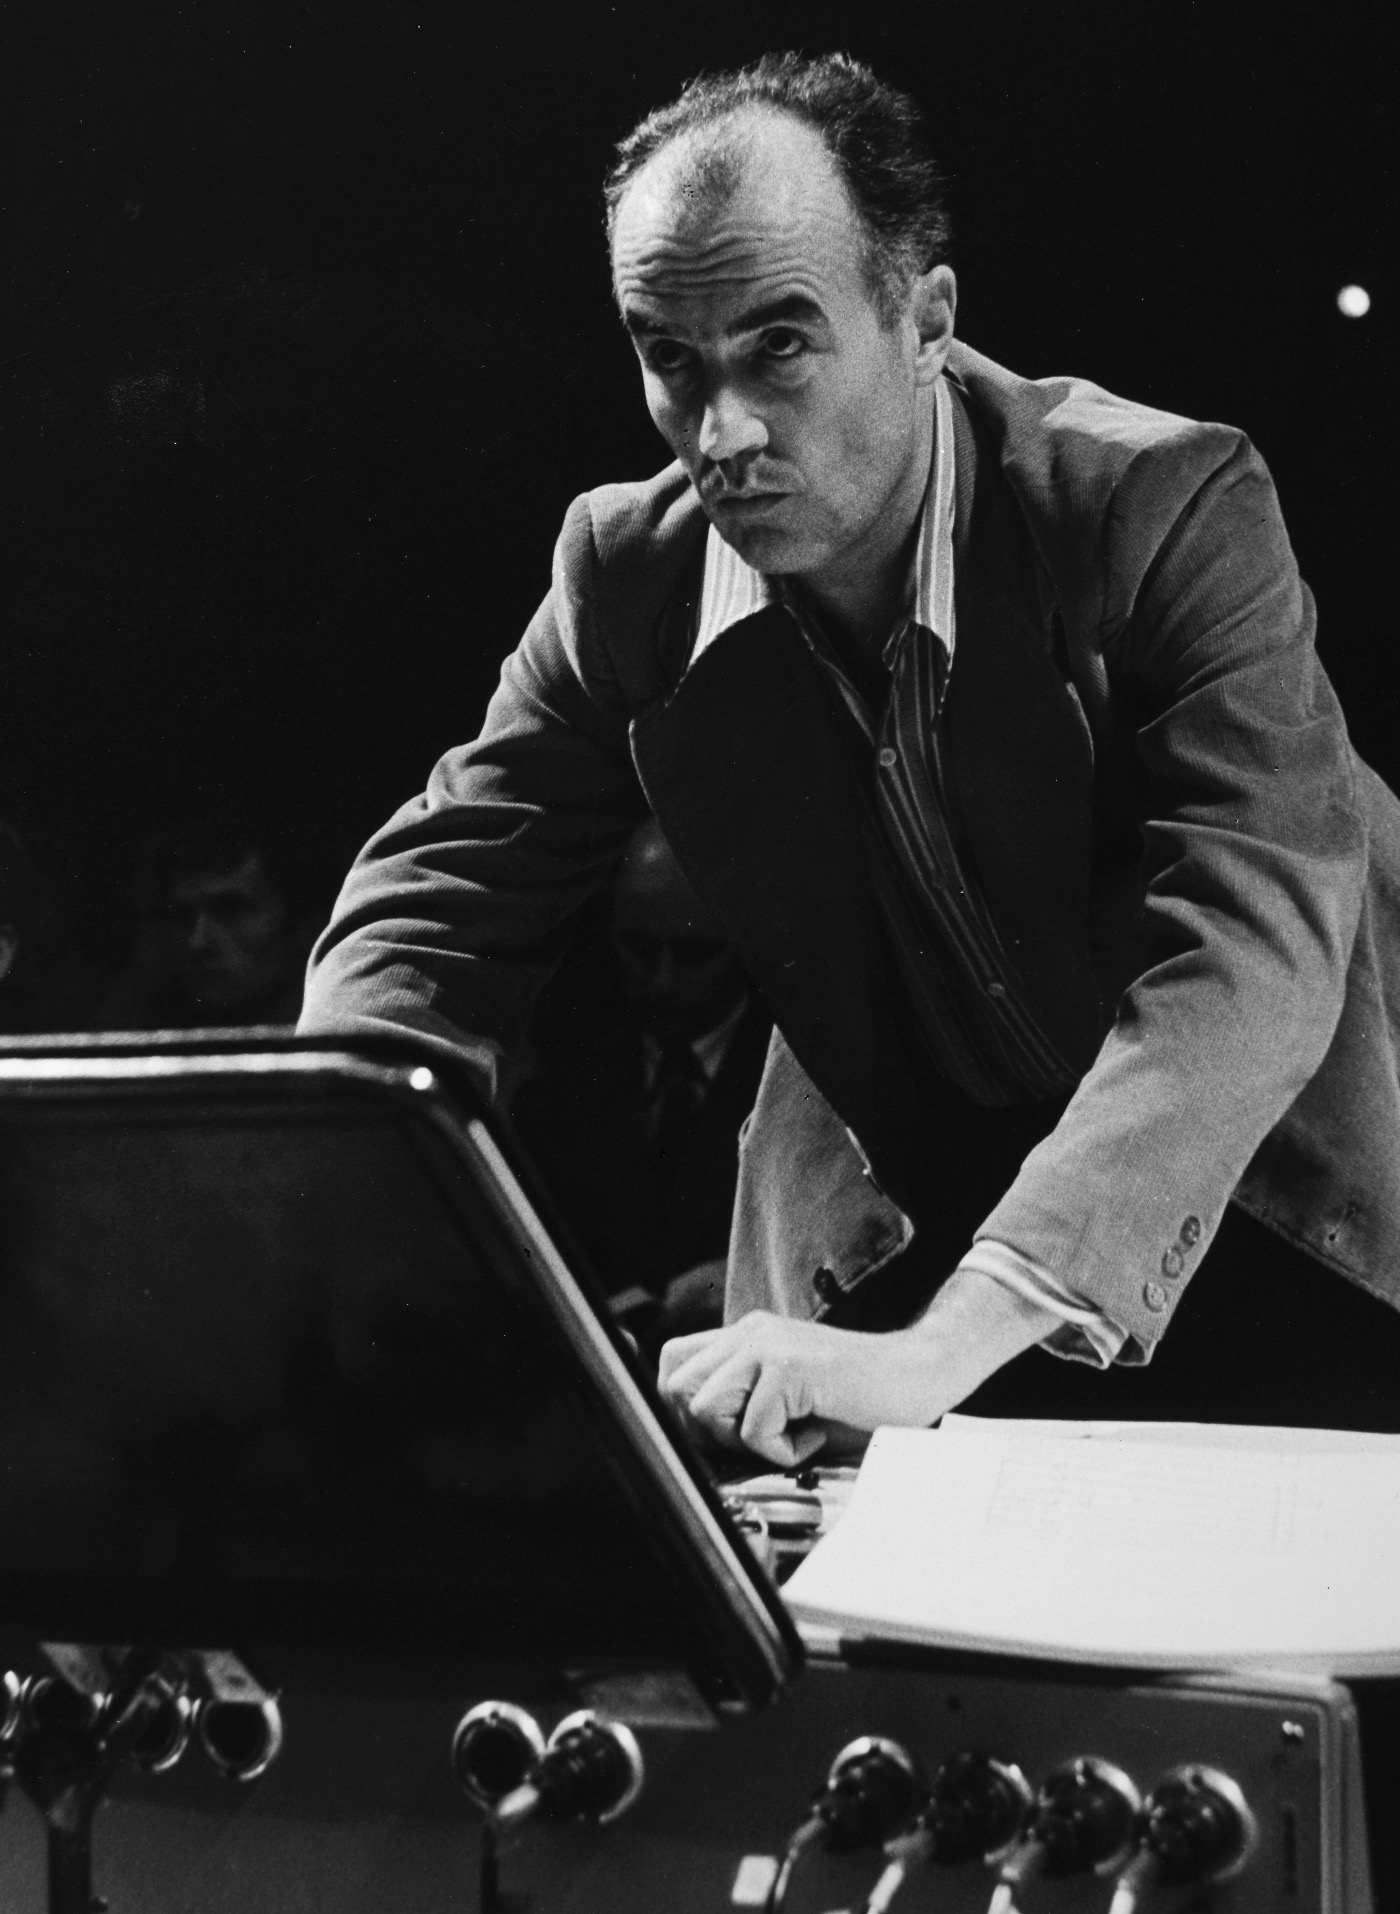 Luigi Nono jako realizator dźwięku w swoim utworze „Como una ola de fuerza y luz” na sopran, fortepian, taśmę i orkiestrę w Filharmonii Narodowej w Warszawie, fot. Andrzej Zborski